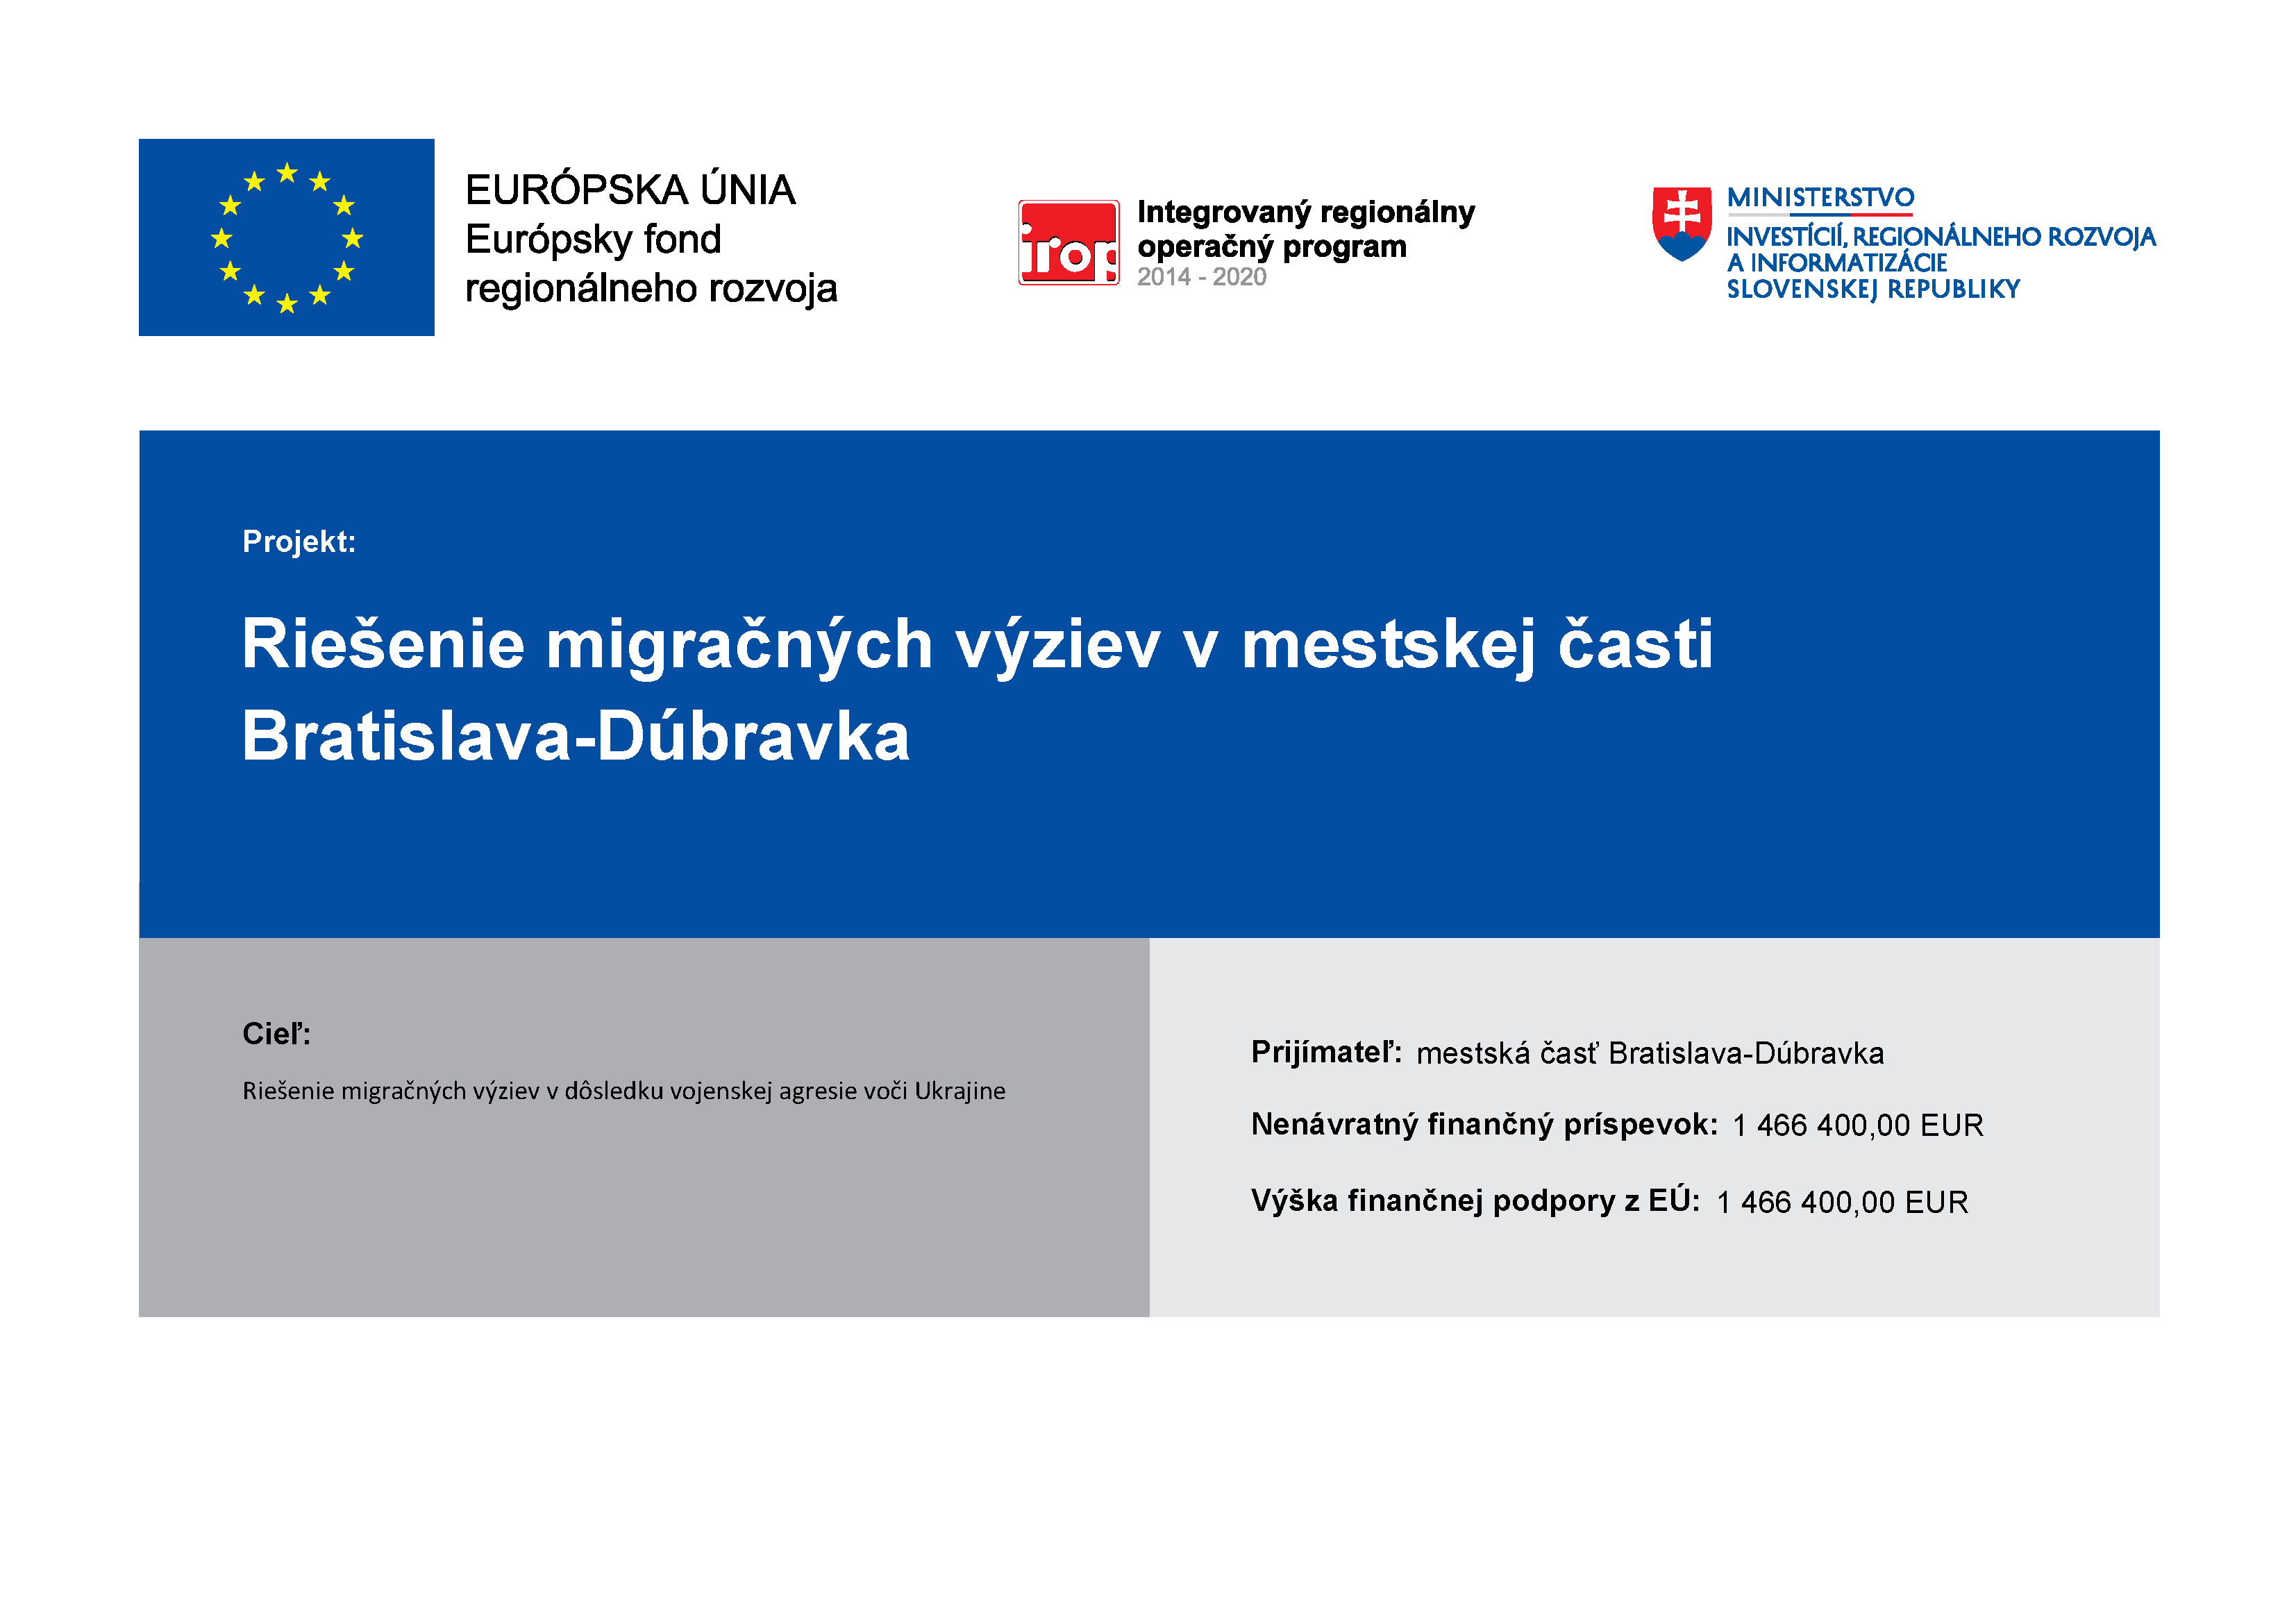 Projekt: Riešenie migračných výziev v mestskej časti Bratislava-Dúbravka; Cieľ: Riešenie migračných výziev v dôsledku vojenskej agresie voči Ukrajine; Prijímateľ: mestská časť Bratislava-Dúbravka; Nenávratný finančný príspevok: 1 466 400,00 EUR; Výška finančnej podpory z EÚ: 1 466 400,00 EUR; Na projekte sa podieľajú: Európska únia, Európsky fond regionálneho rozvoja, Integrovaný regionálny operačný program 2014 - 2020, Ministerstvo Investícií, regionálneho rozvoja a informatizácie Slovenskej republiky